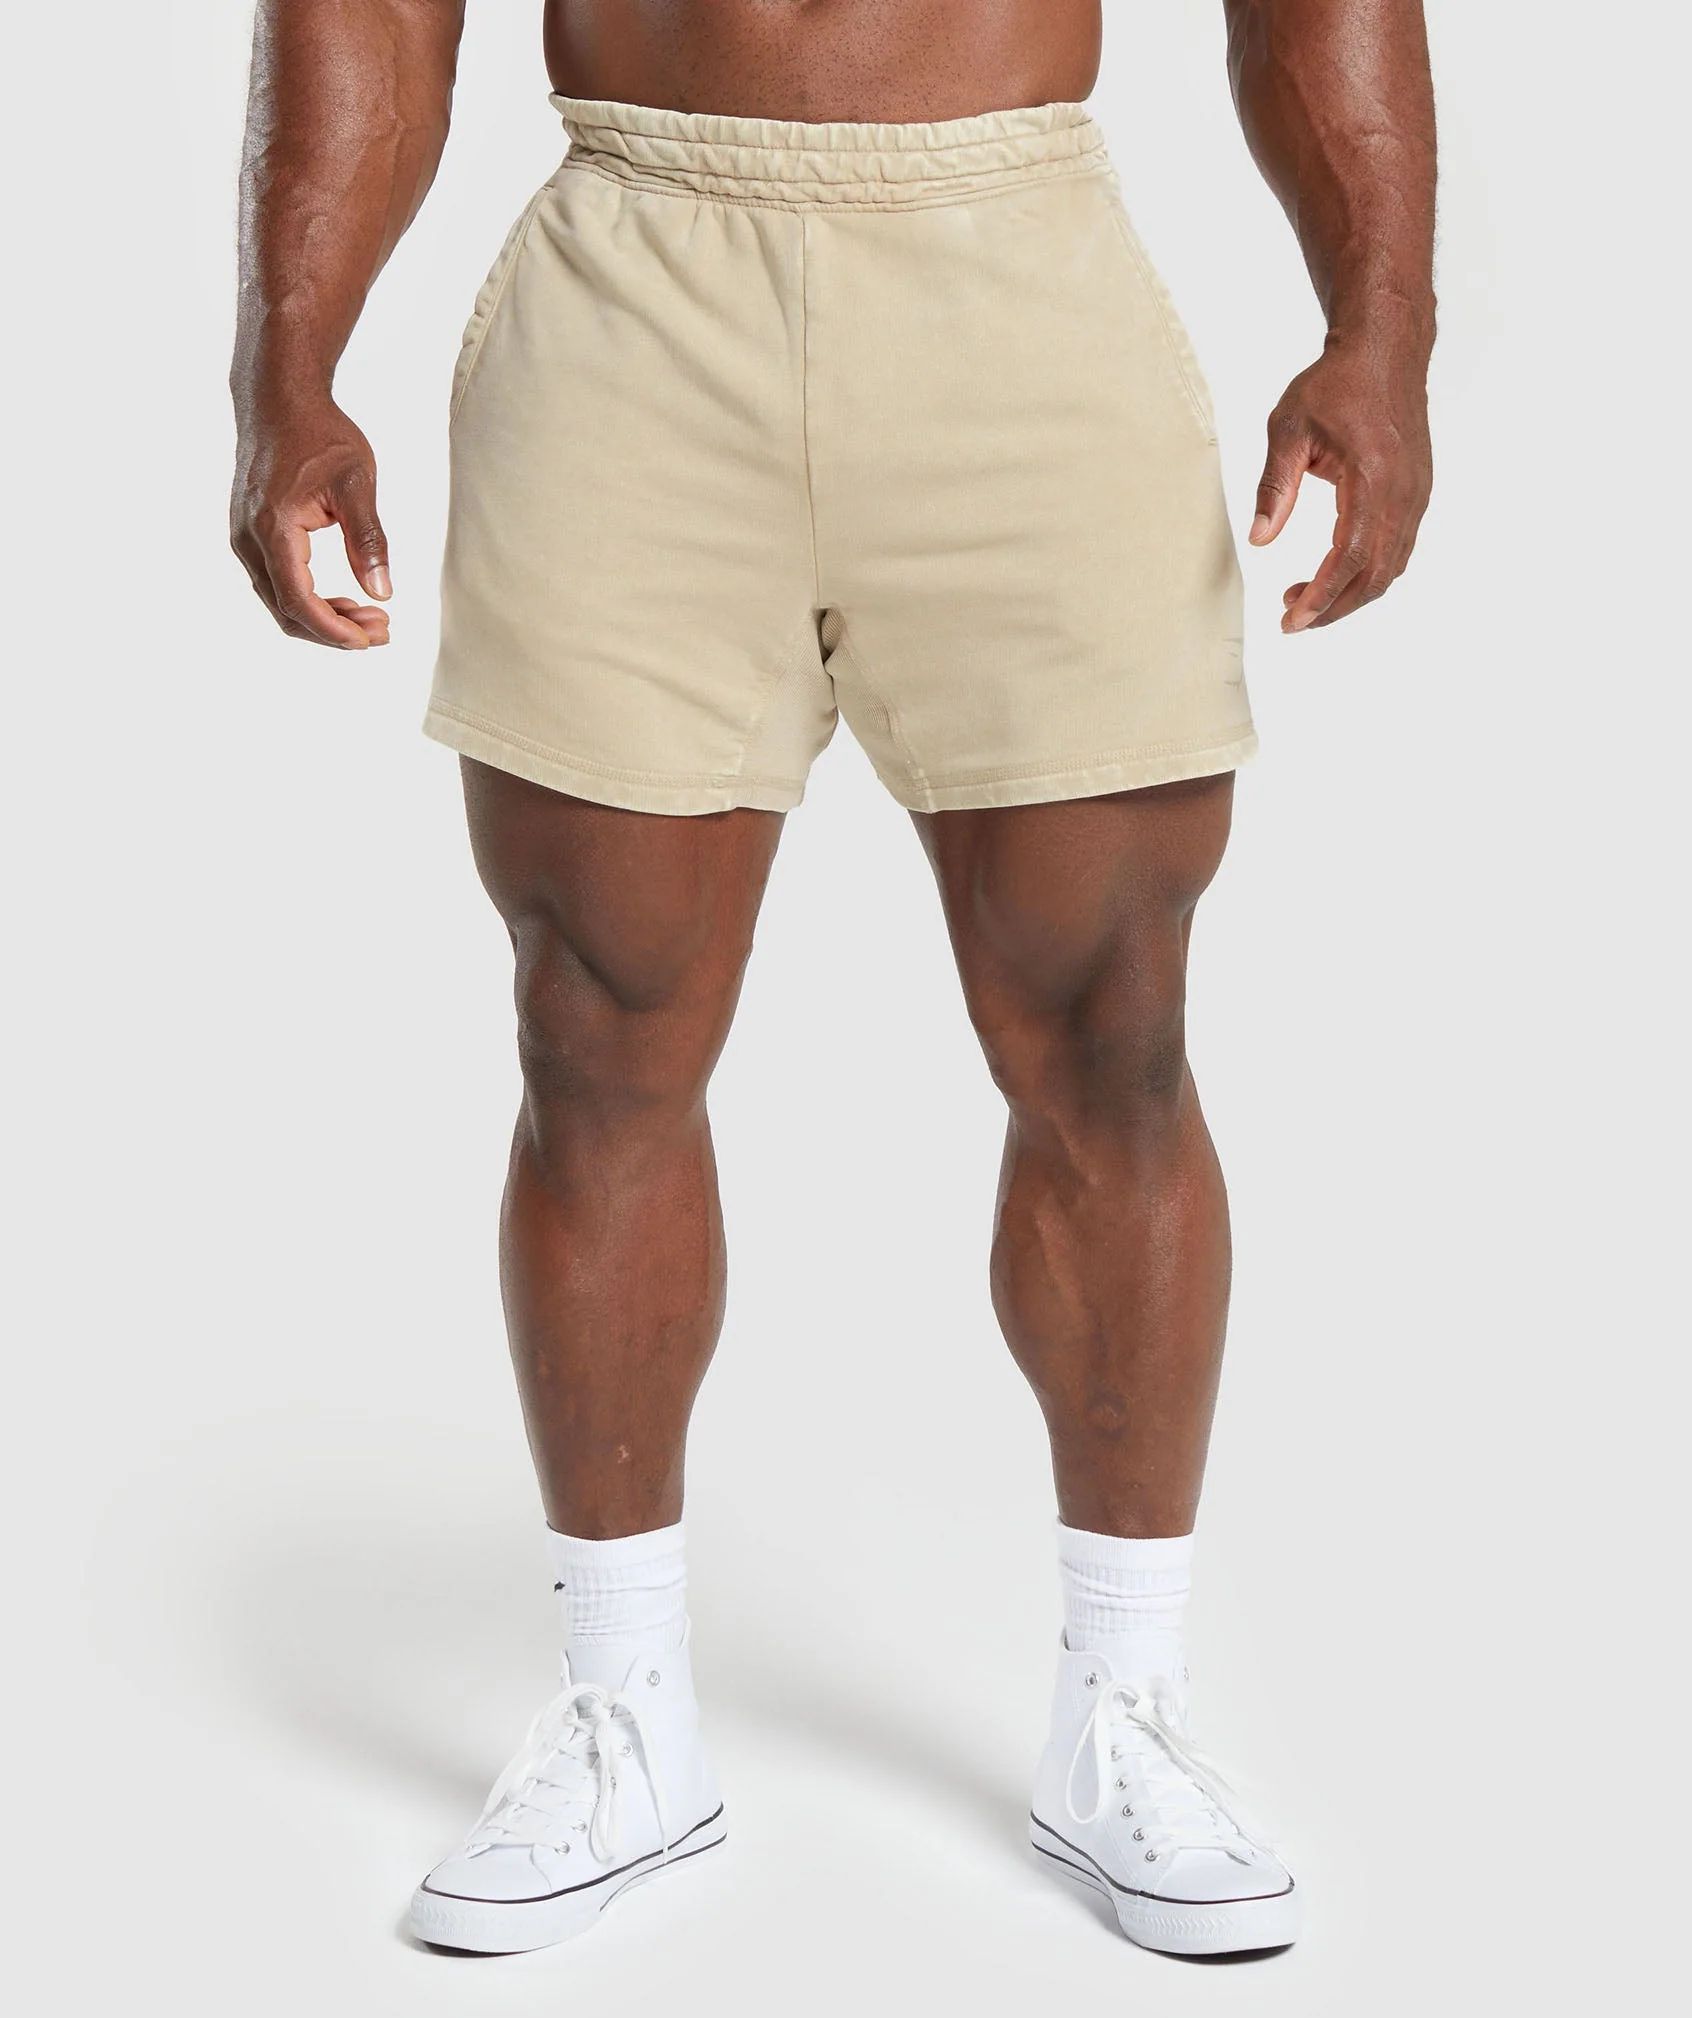 Gymshark Heritage 5" Shorts - Desert Beige | Gymshark US